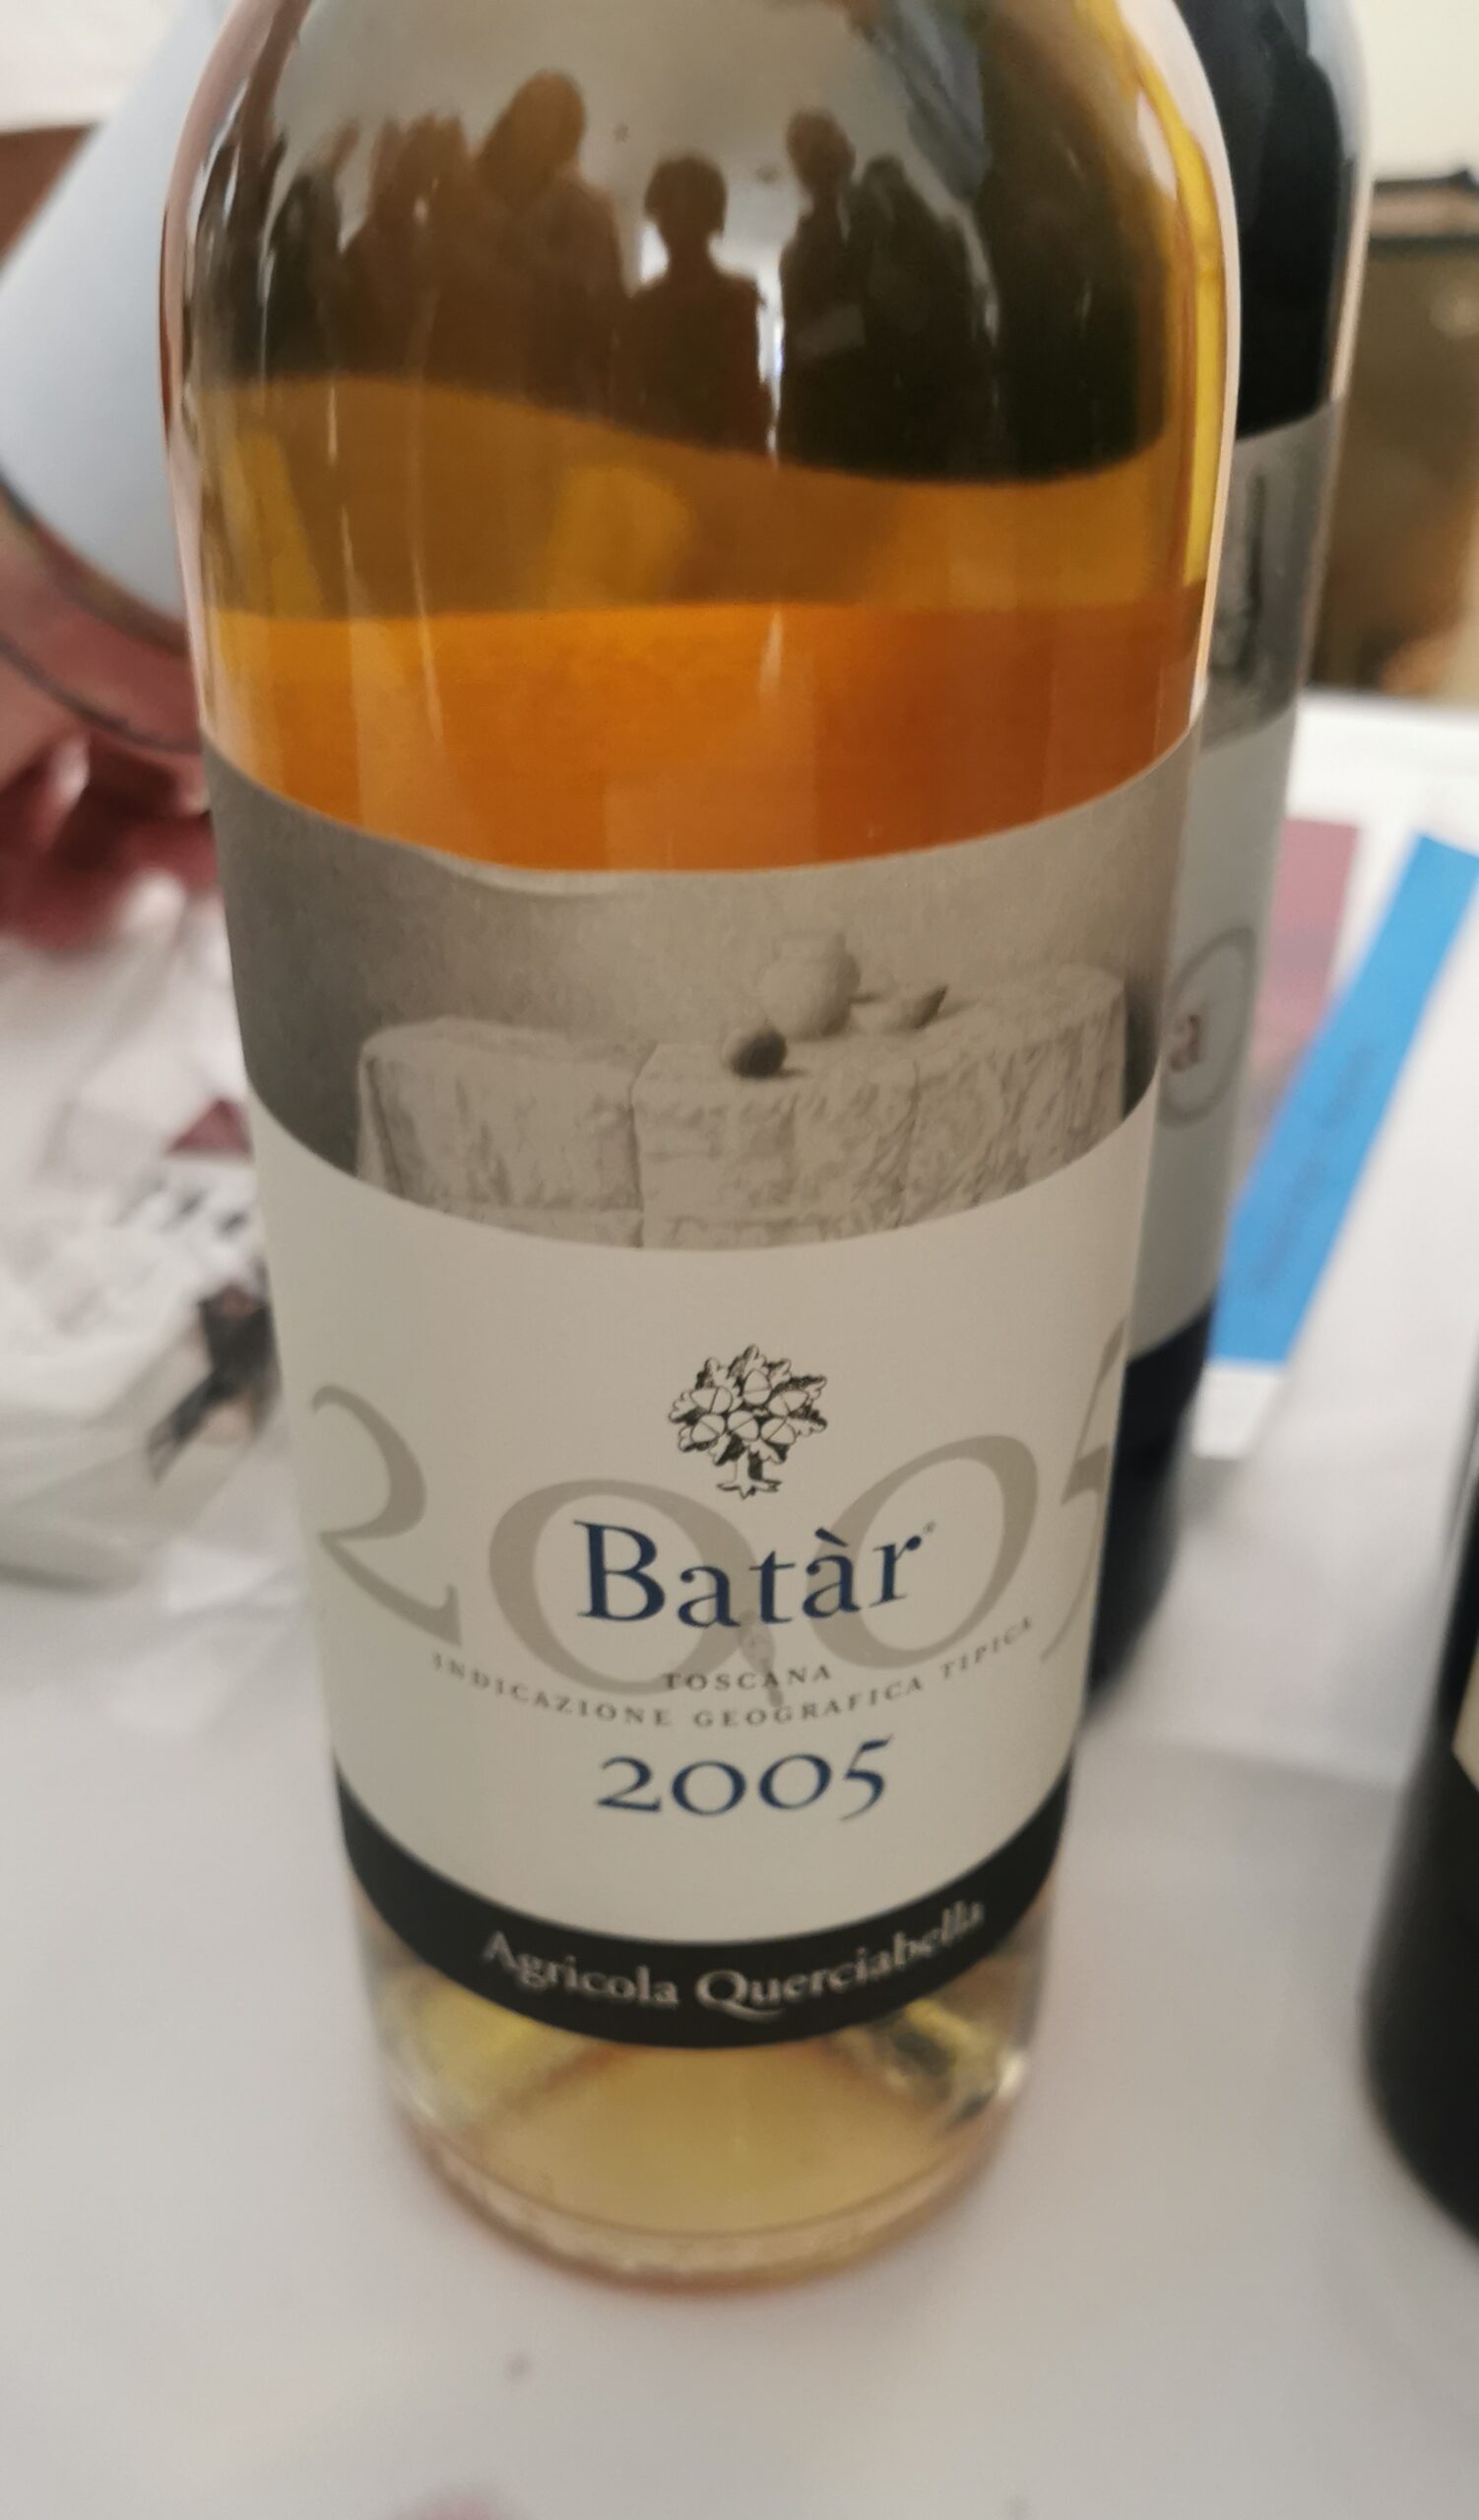 Batàr 2005- Chardonnay, Pinot Bianco-Querciabella, articolo: Terre di Toscana 2024, un viaggio di assaggi tra i macerati, foto dell'autrice